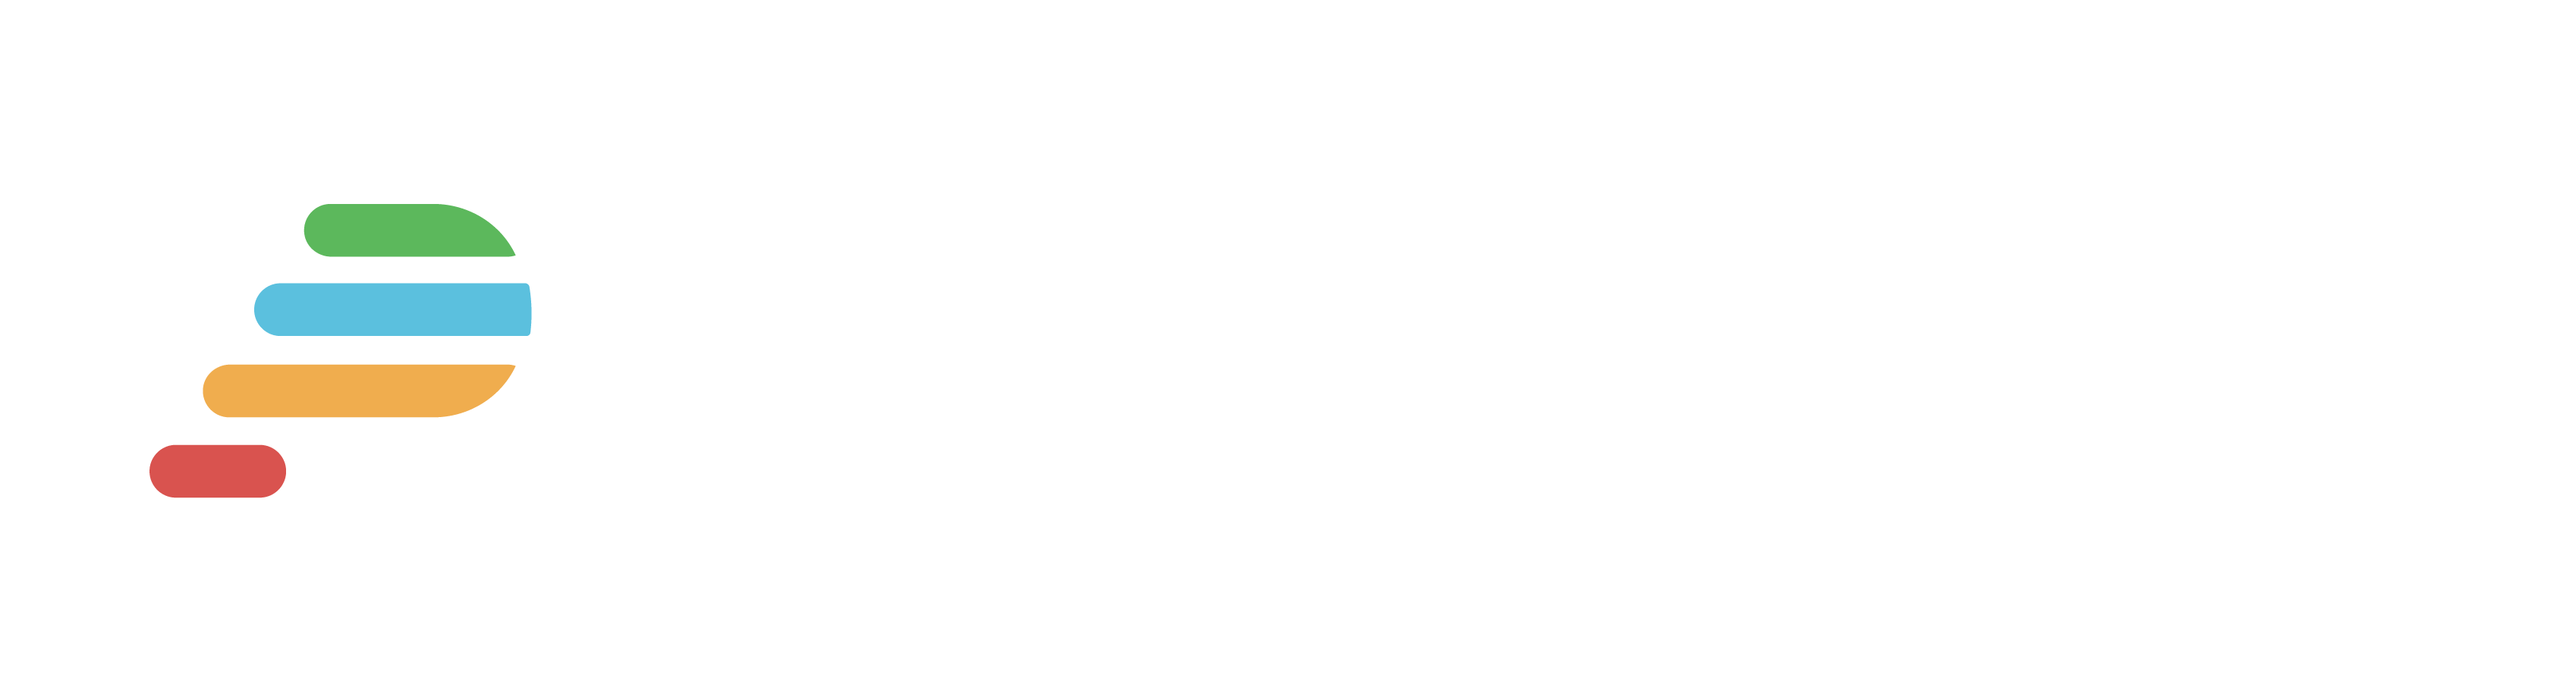 ProcureNow